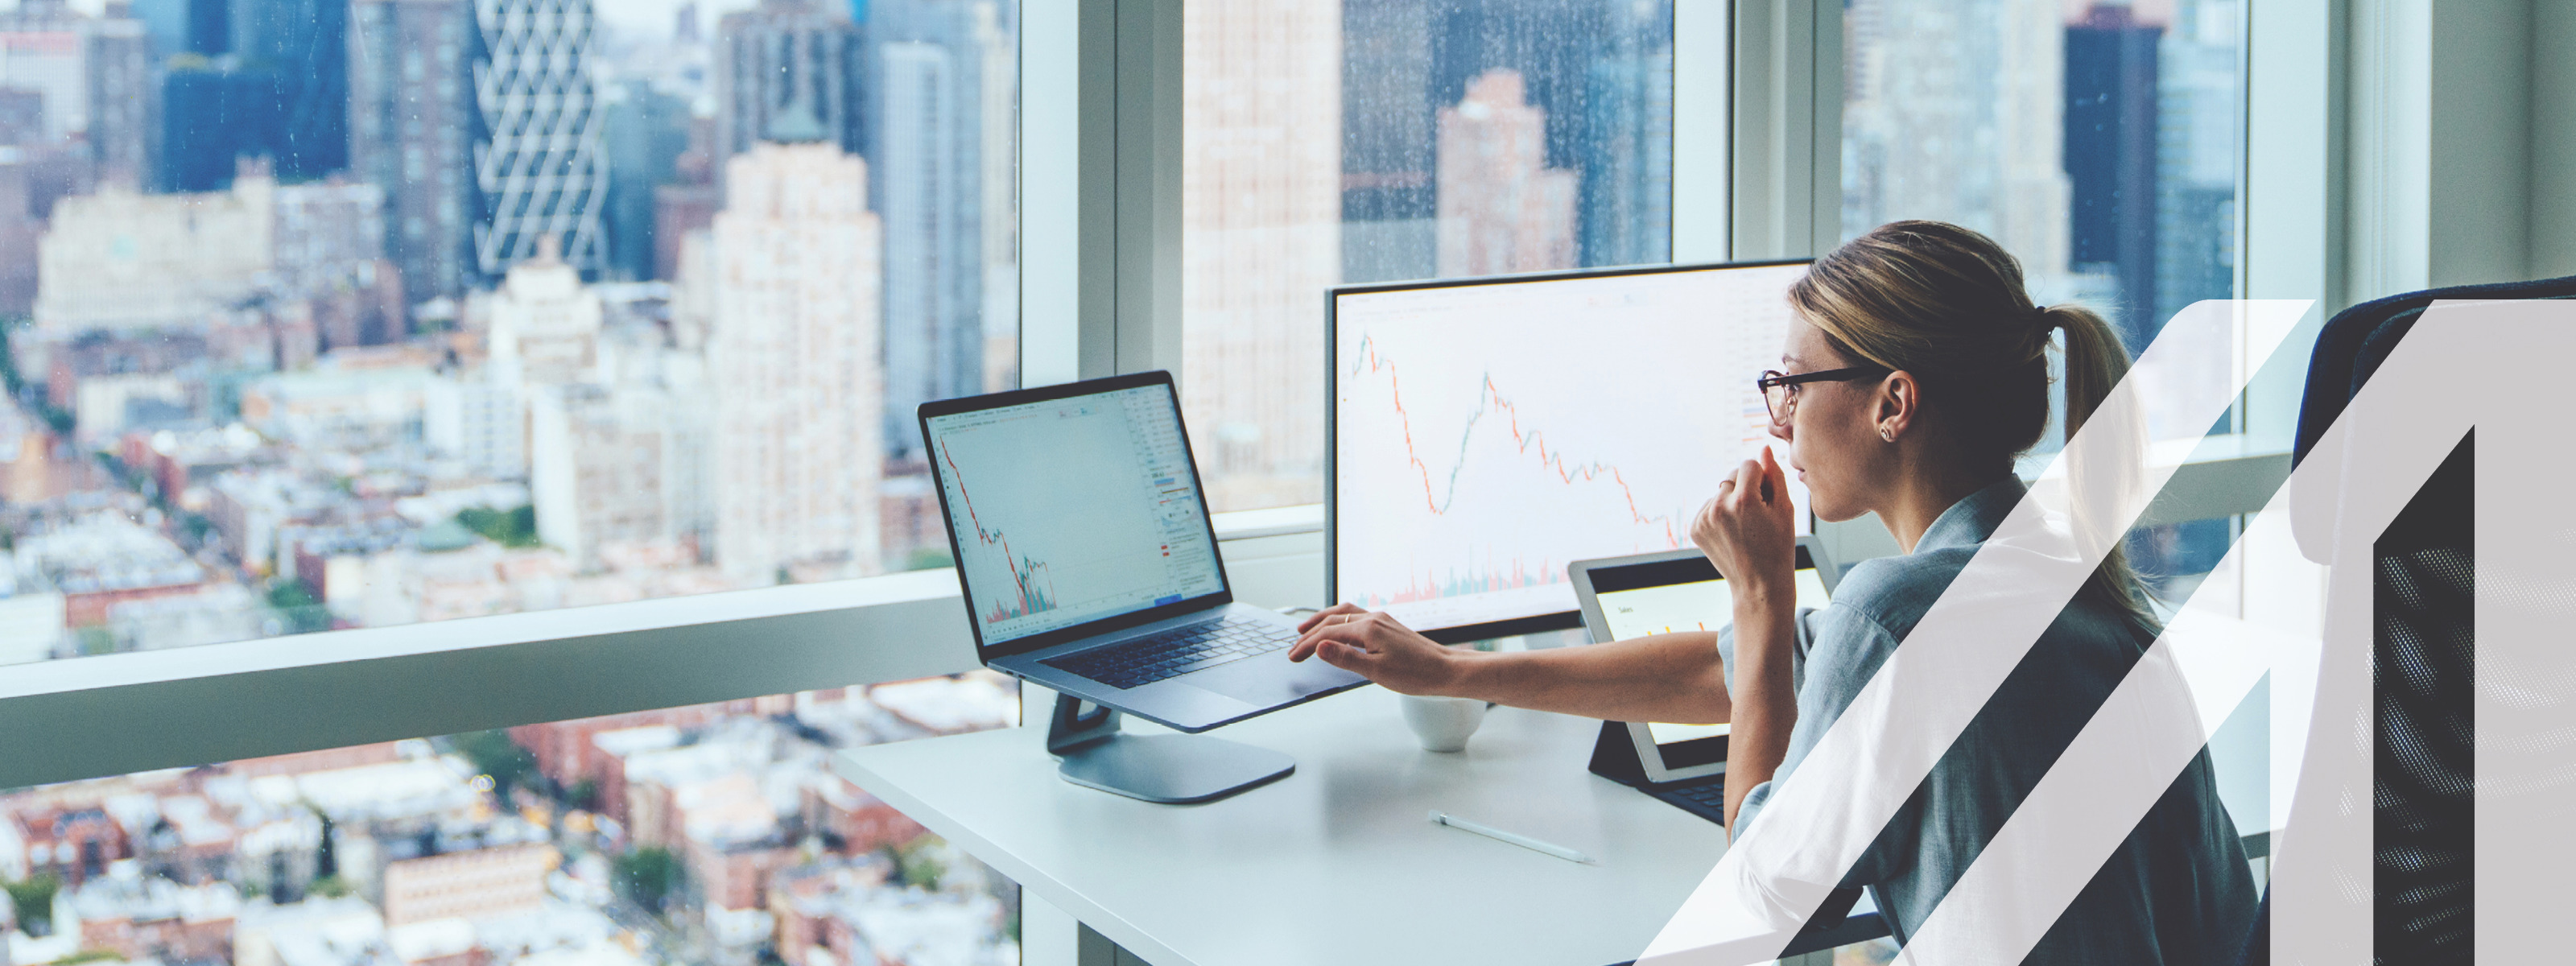 Rückansicht einer Business-Frau vor einer Glasfront eines Büros in einem Wolkenkratzer mit Blick auf eine moderne Großstadt. Vor ihr ein Computer mit finanziellen Graphen und Statistiken auf dem Monitor.